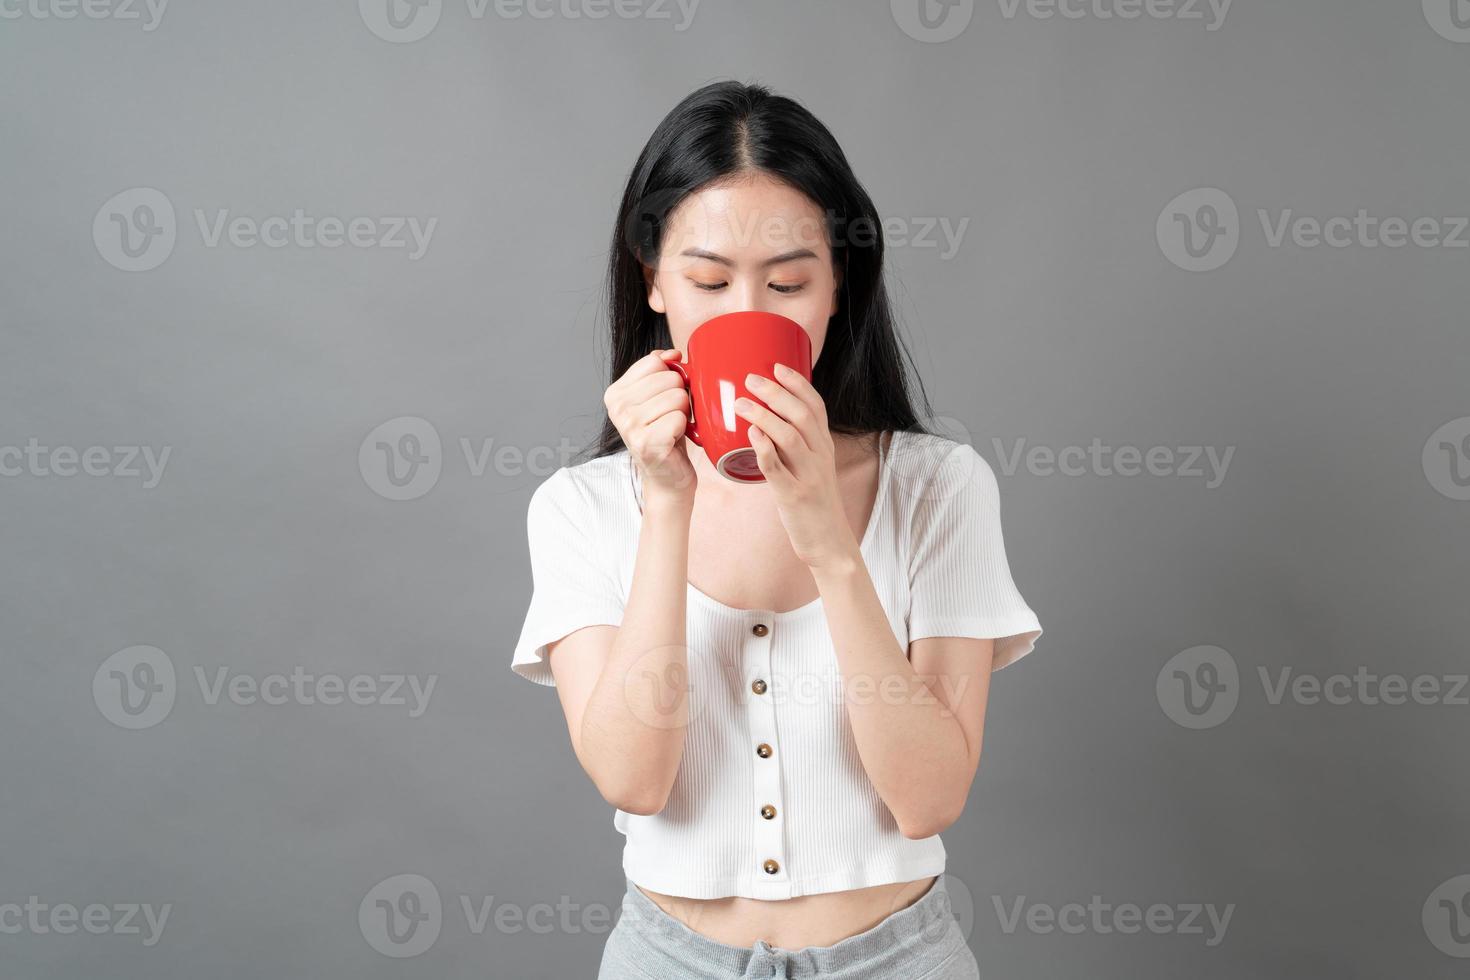 giovane donna asiatica con la faccia felice e la mano che tiene la tazza di caffè coffee foto